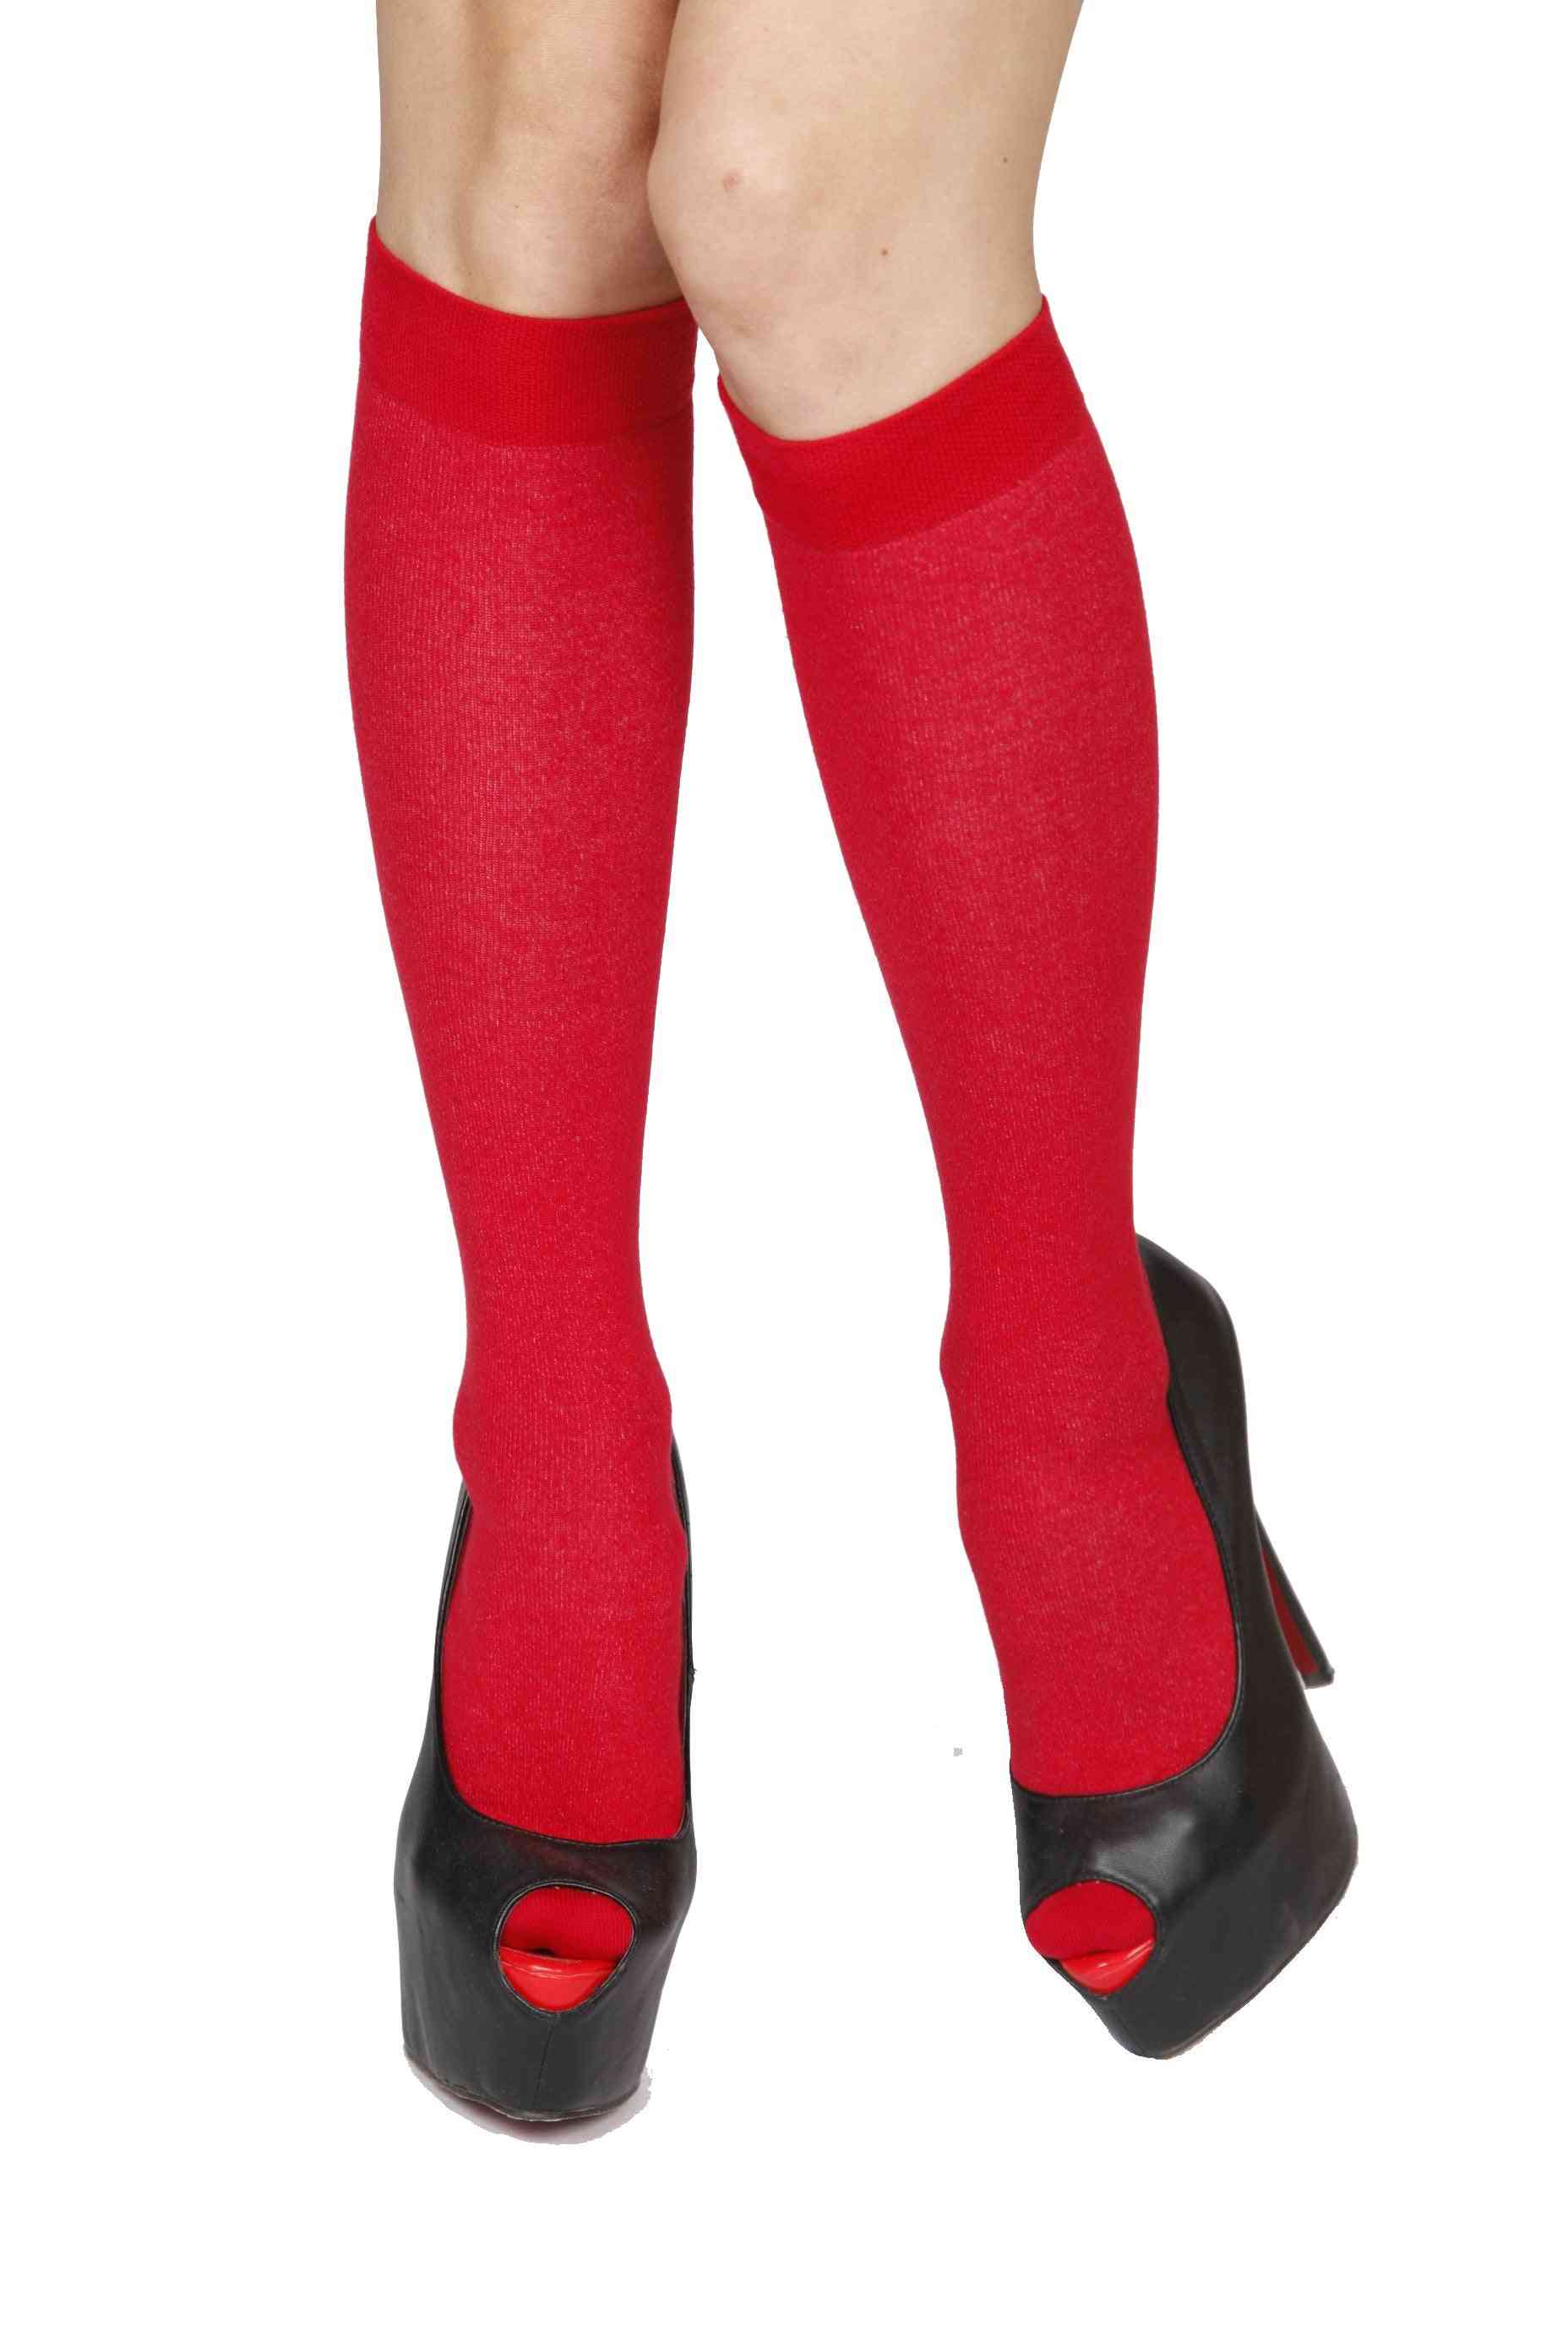 Algodão vermelho na altura do joelho, saias e meias de dança folclórica